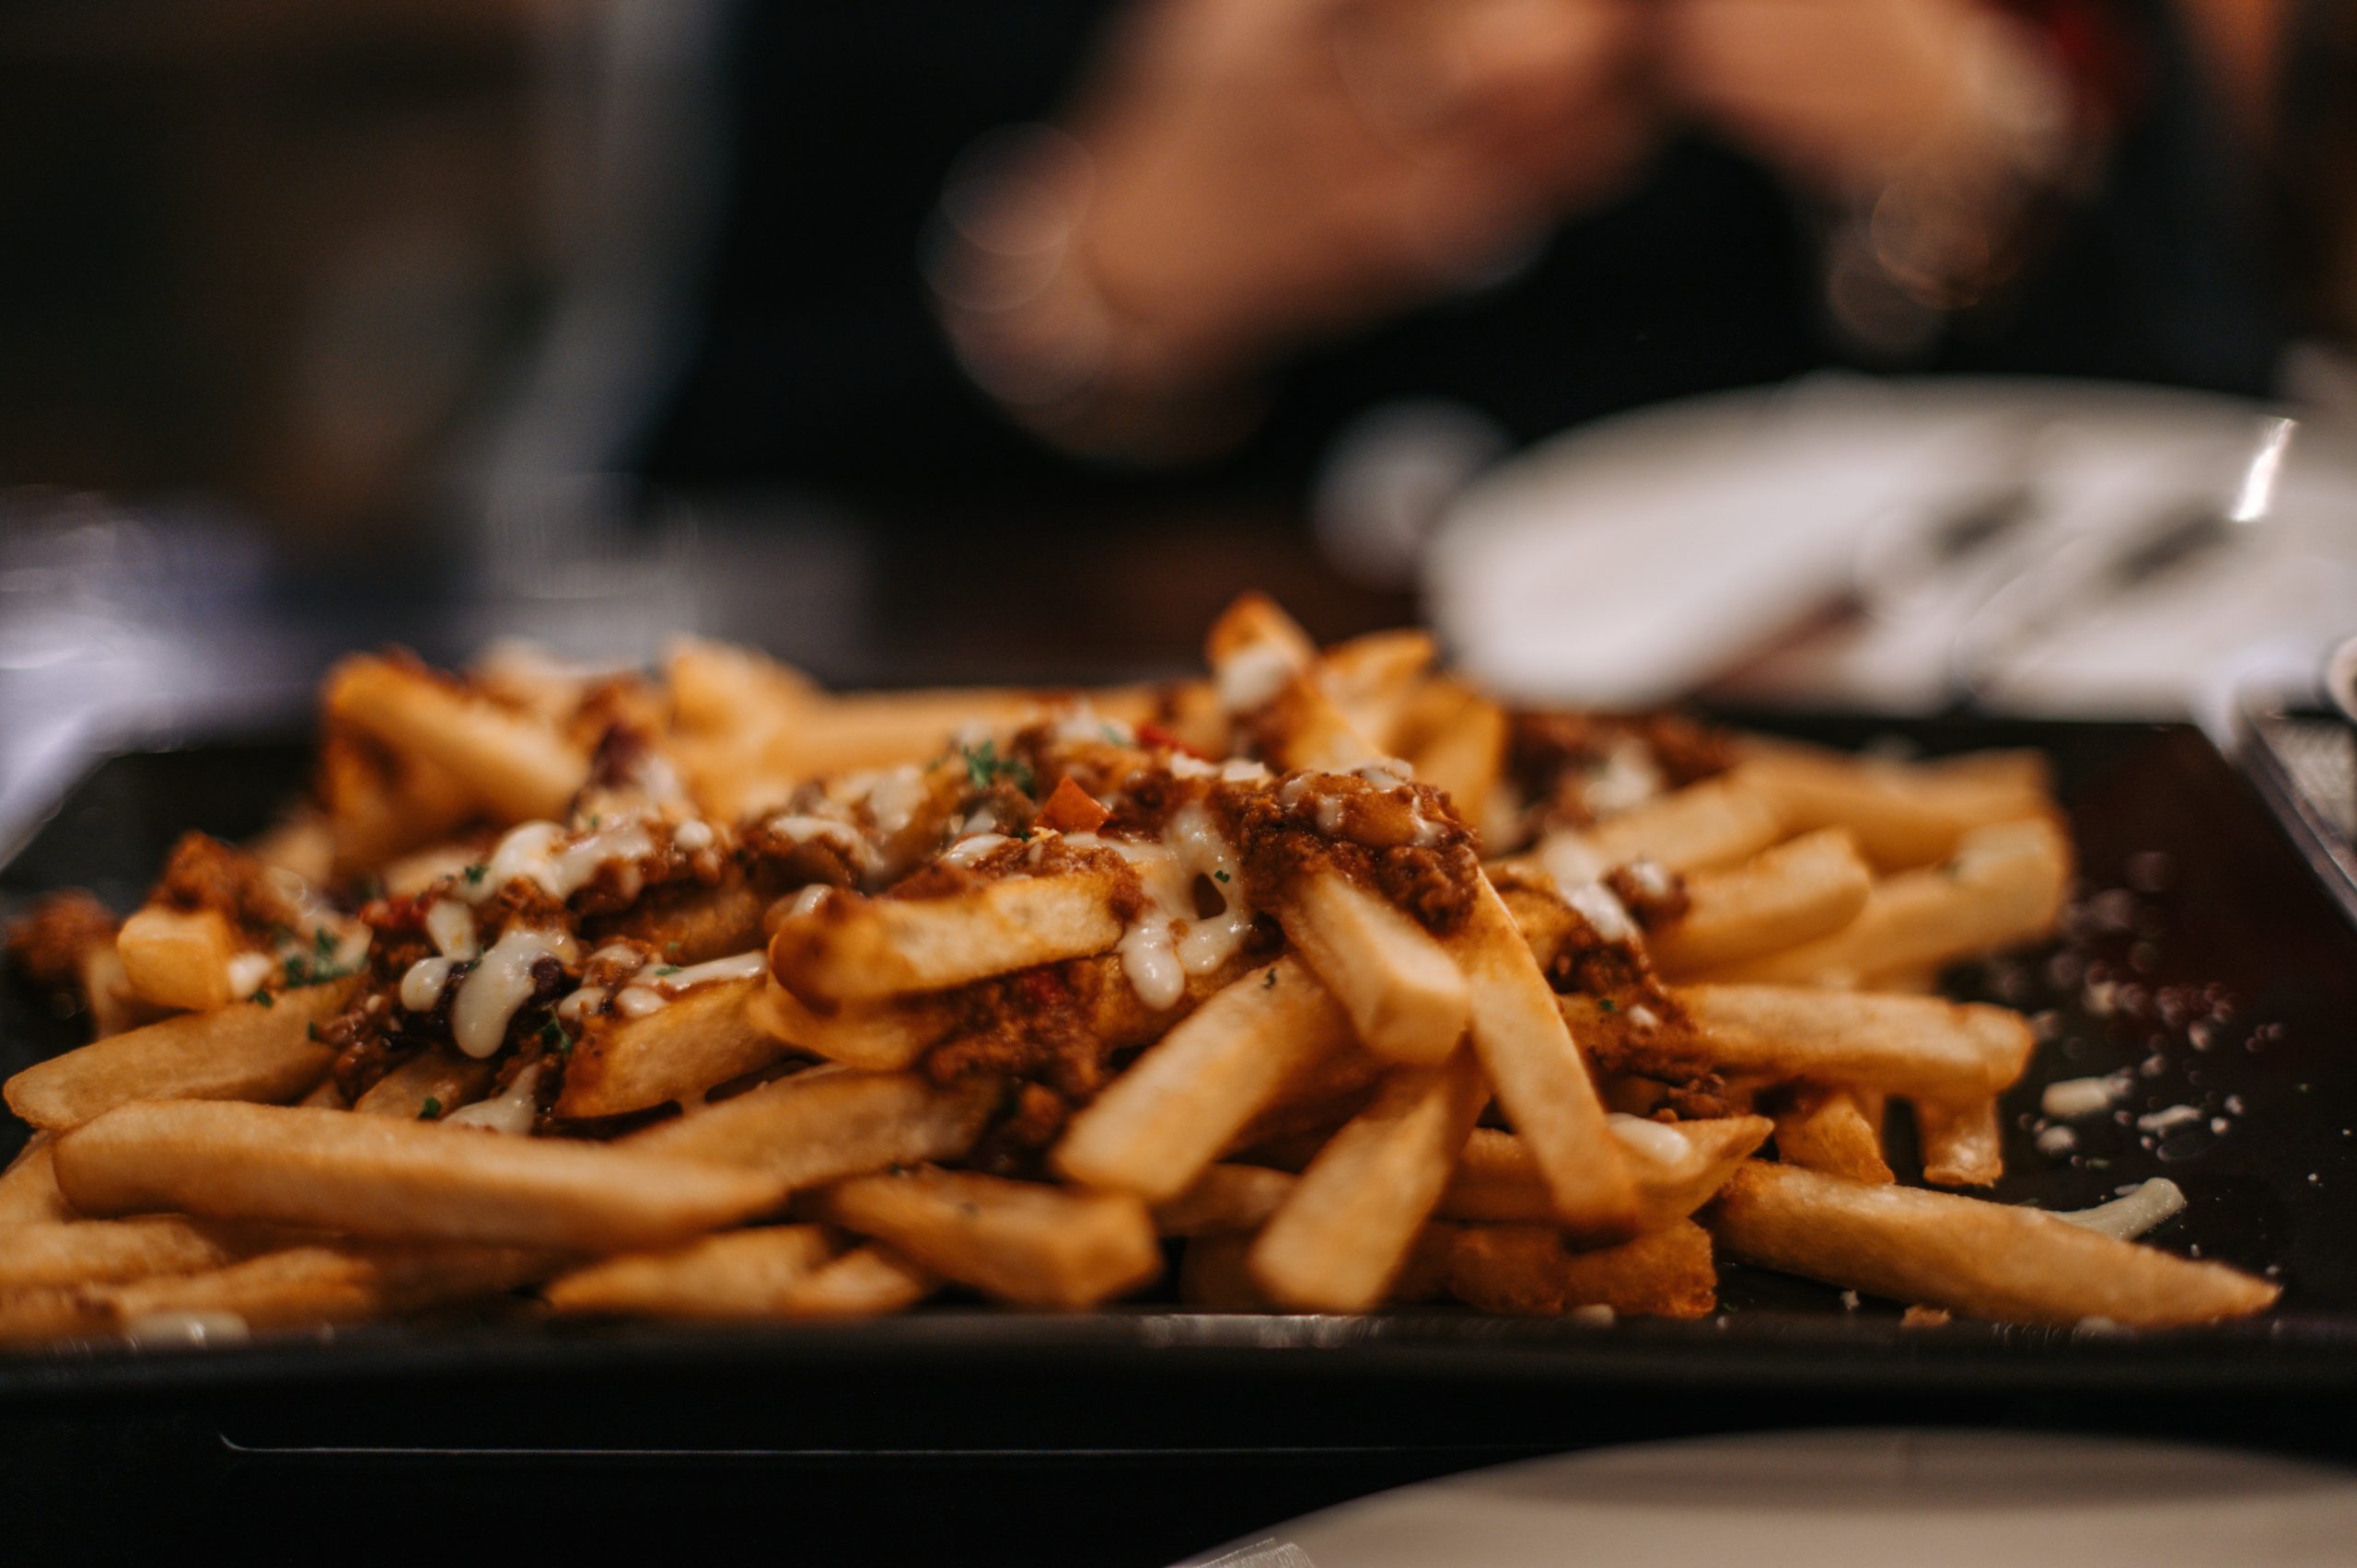 Quelle est la quantité de frites idéale par personne ?